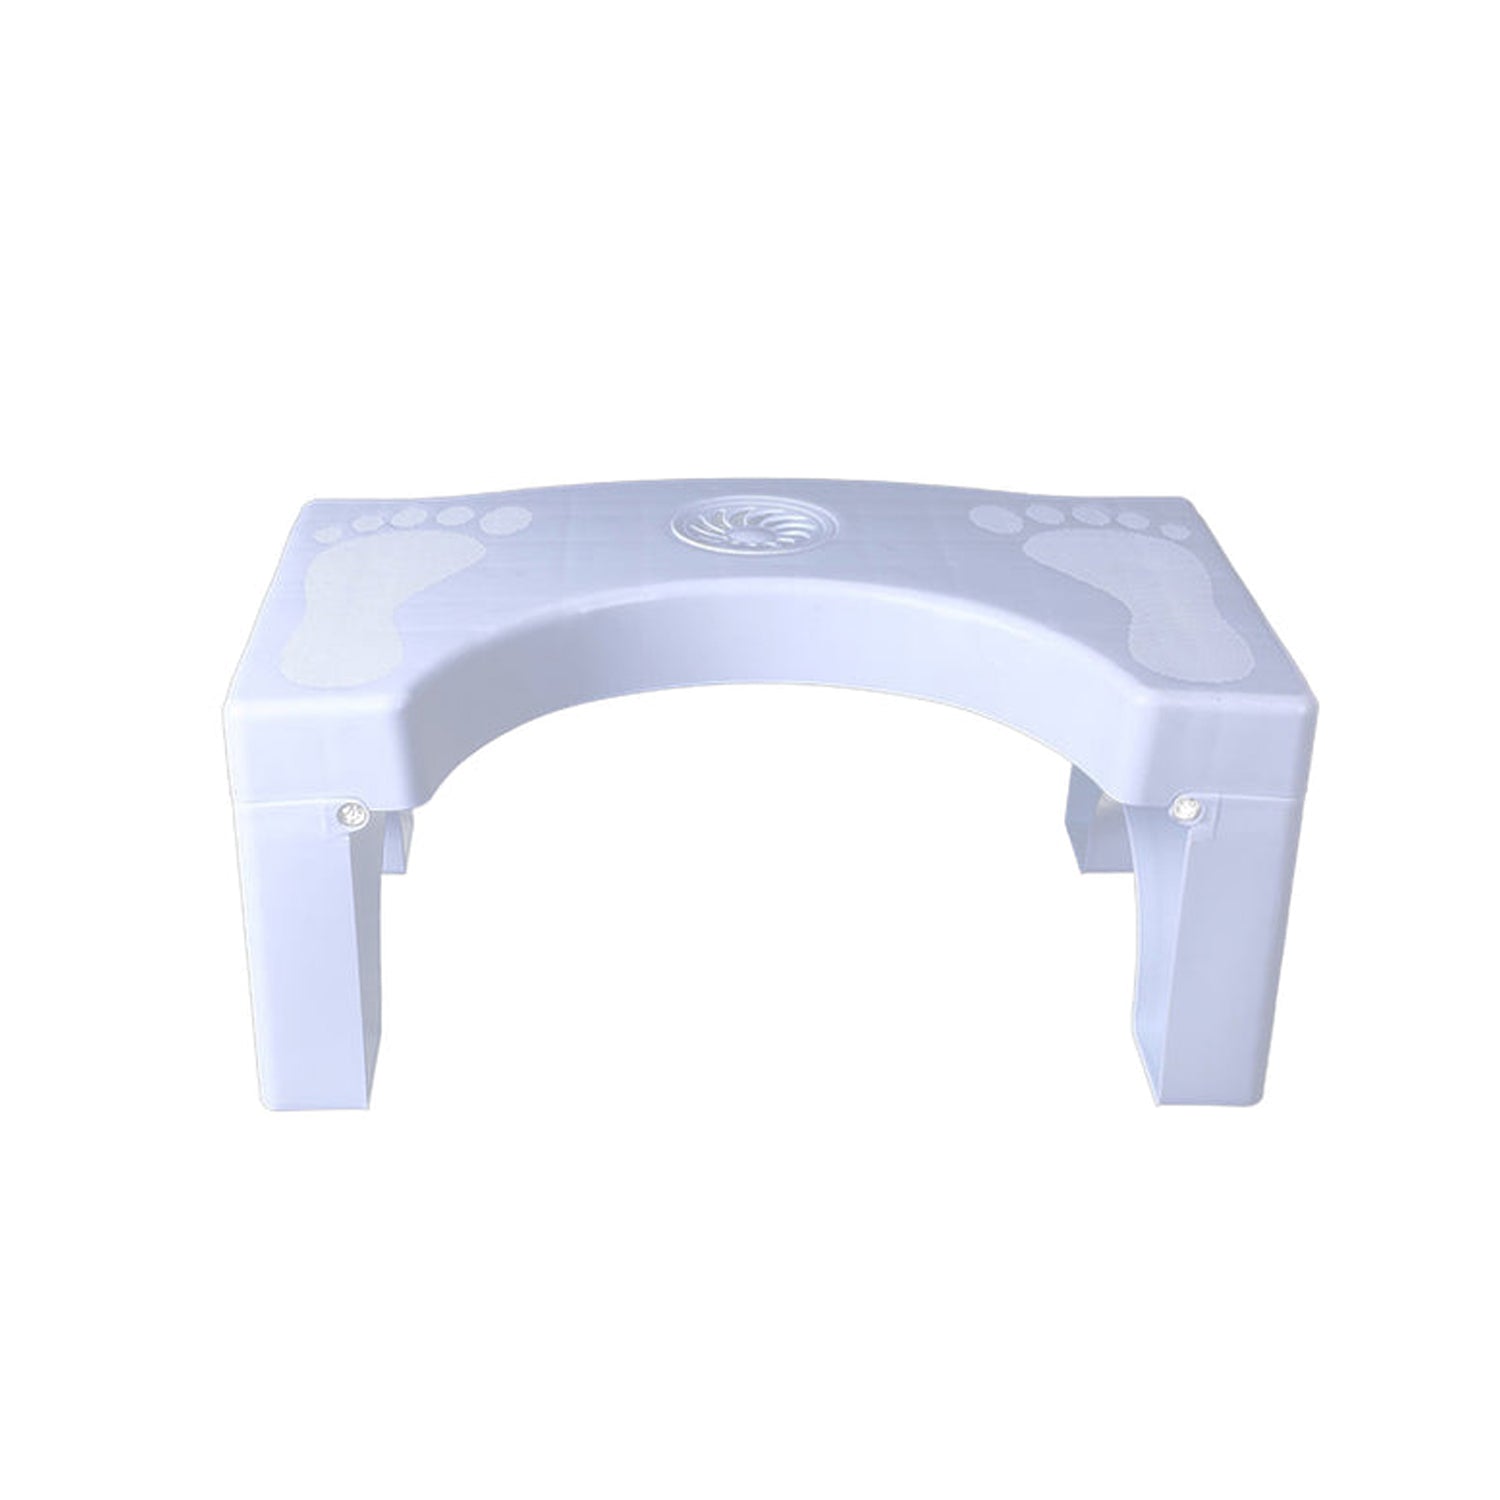 Plastic Non-Slip Folding Toilet Squat Stool - White Color